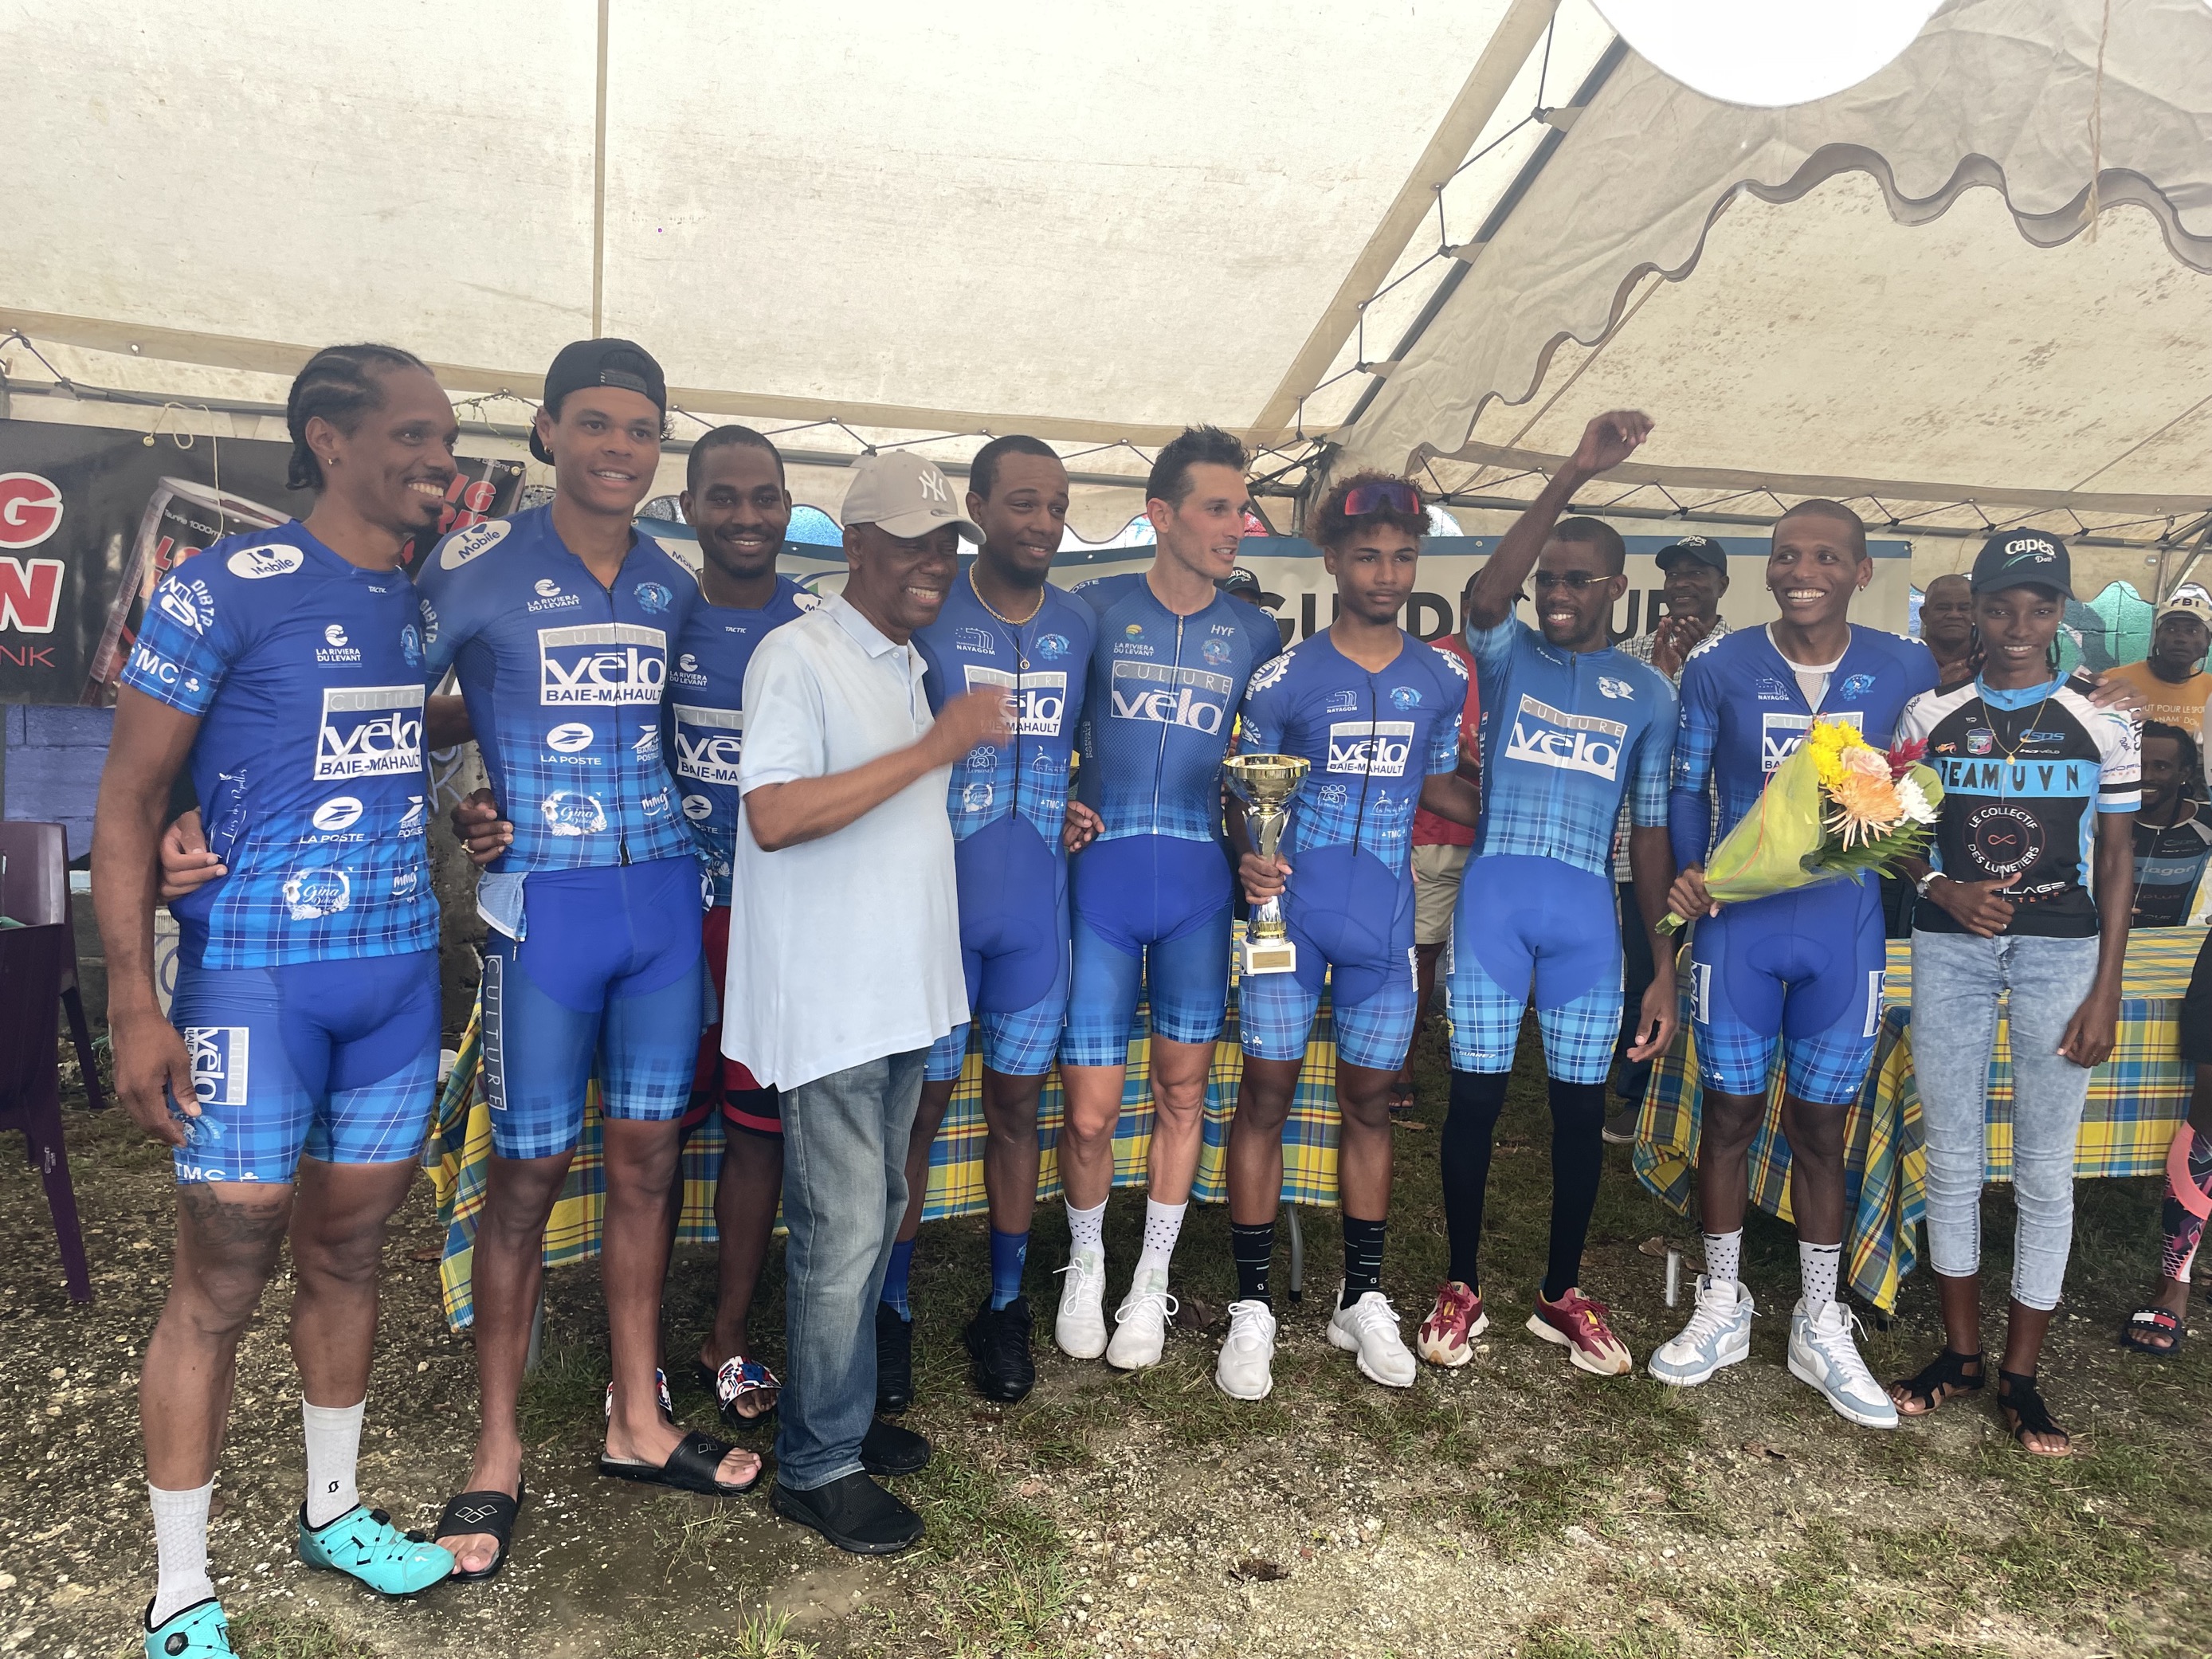     Grand Prix Cycliste RCI : la Team Madras Cycling remporte le contre-la-montre par équipe

